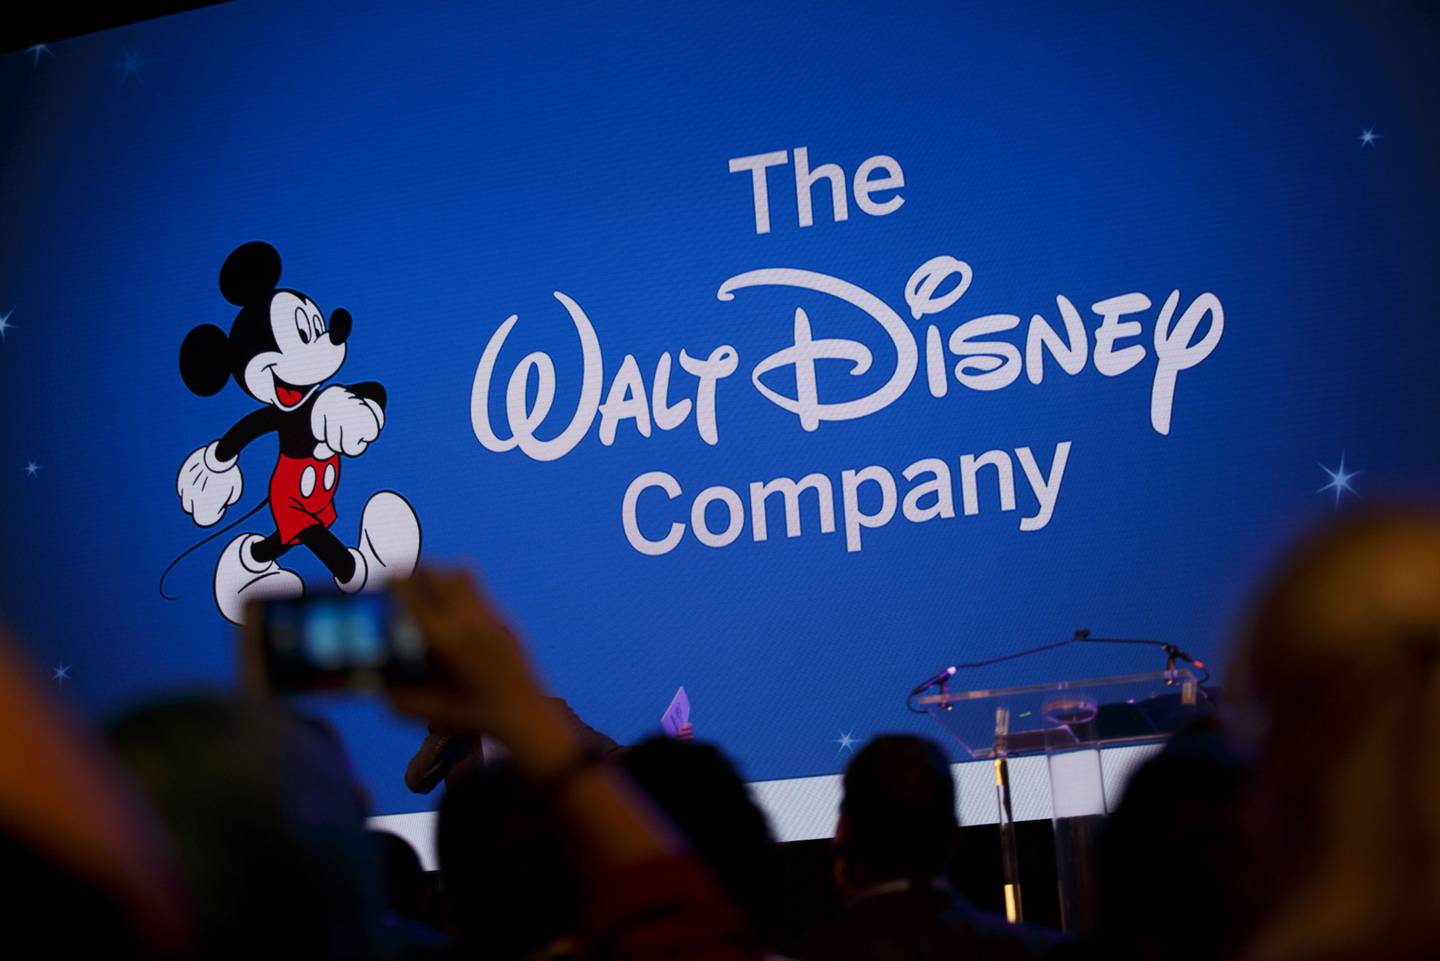 Señalización de Walt Disney Co. se proyecta durante la D23 Expo 2017 en Anaheim, California, EE.UU., el sábado 15 de julio de 2017. Fotógrafo: Patrick T. Fallon/Bloomberg